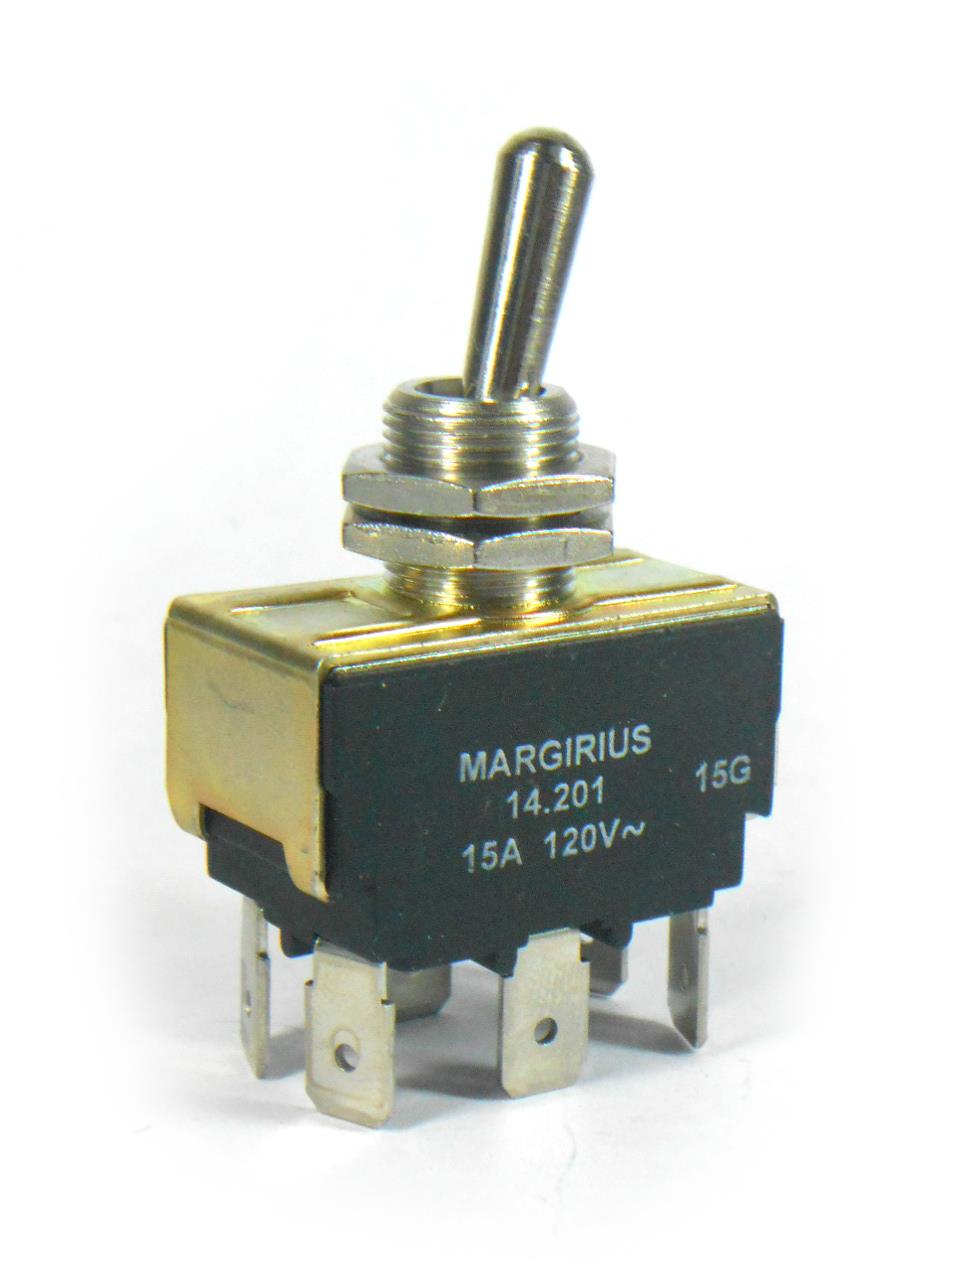 Interruptores de Alavanca - Interruptor bipolar 15A 120V E3Q